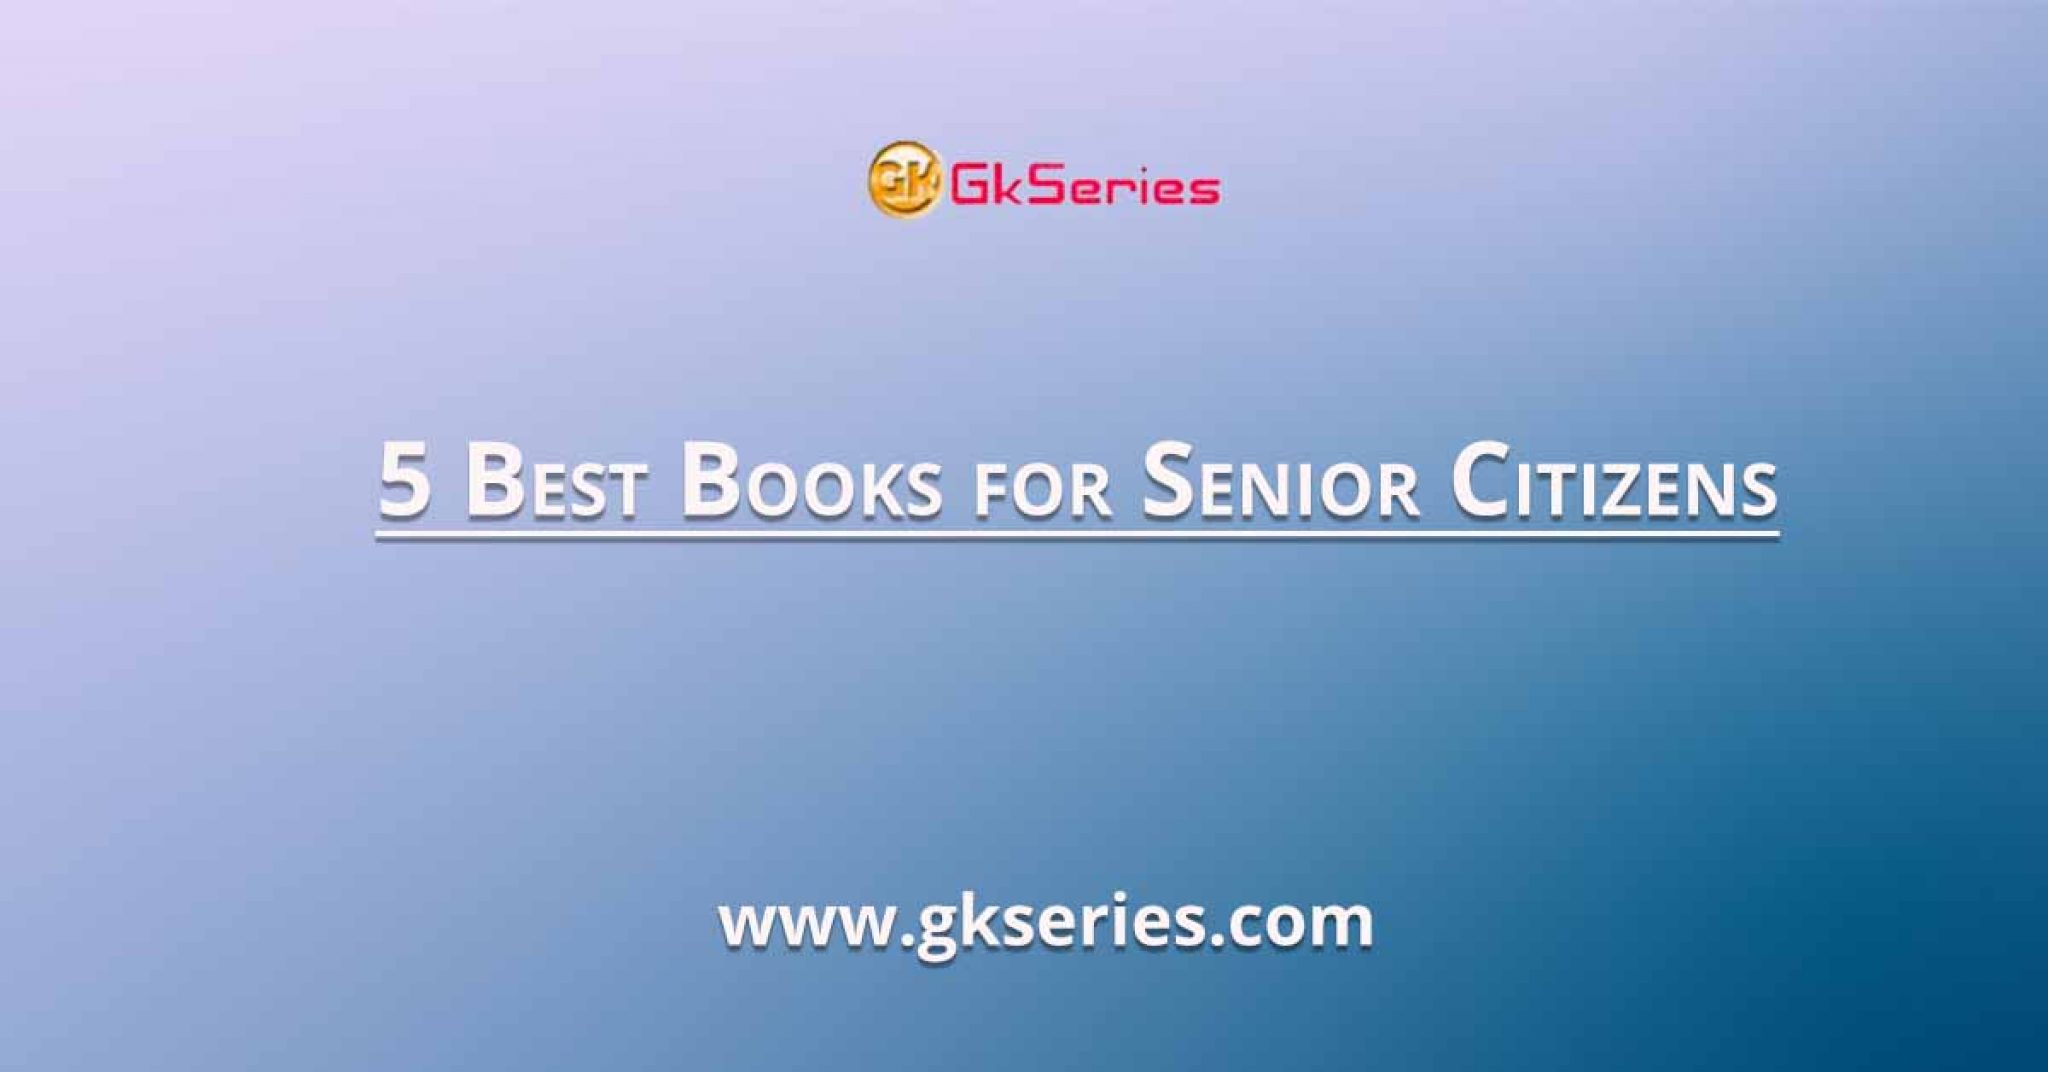 5 Best Books for Senior Citizens Gkseries Books